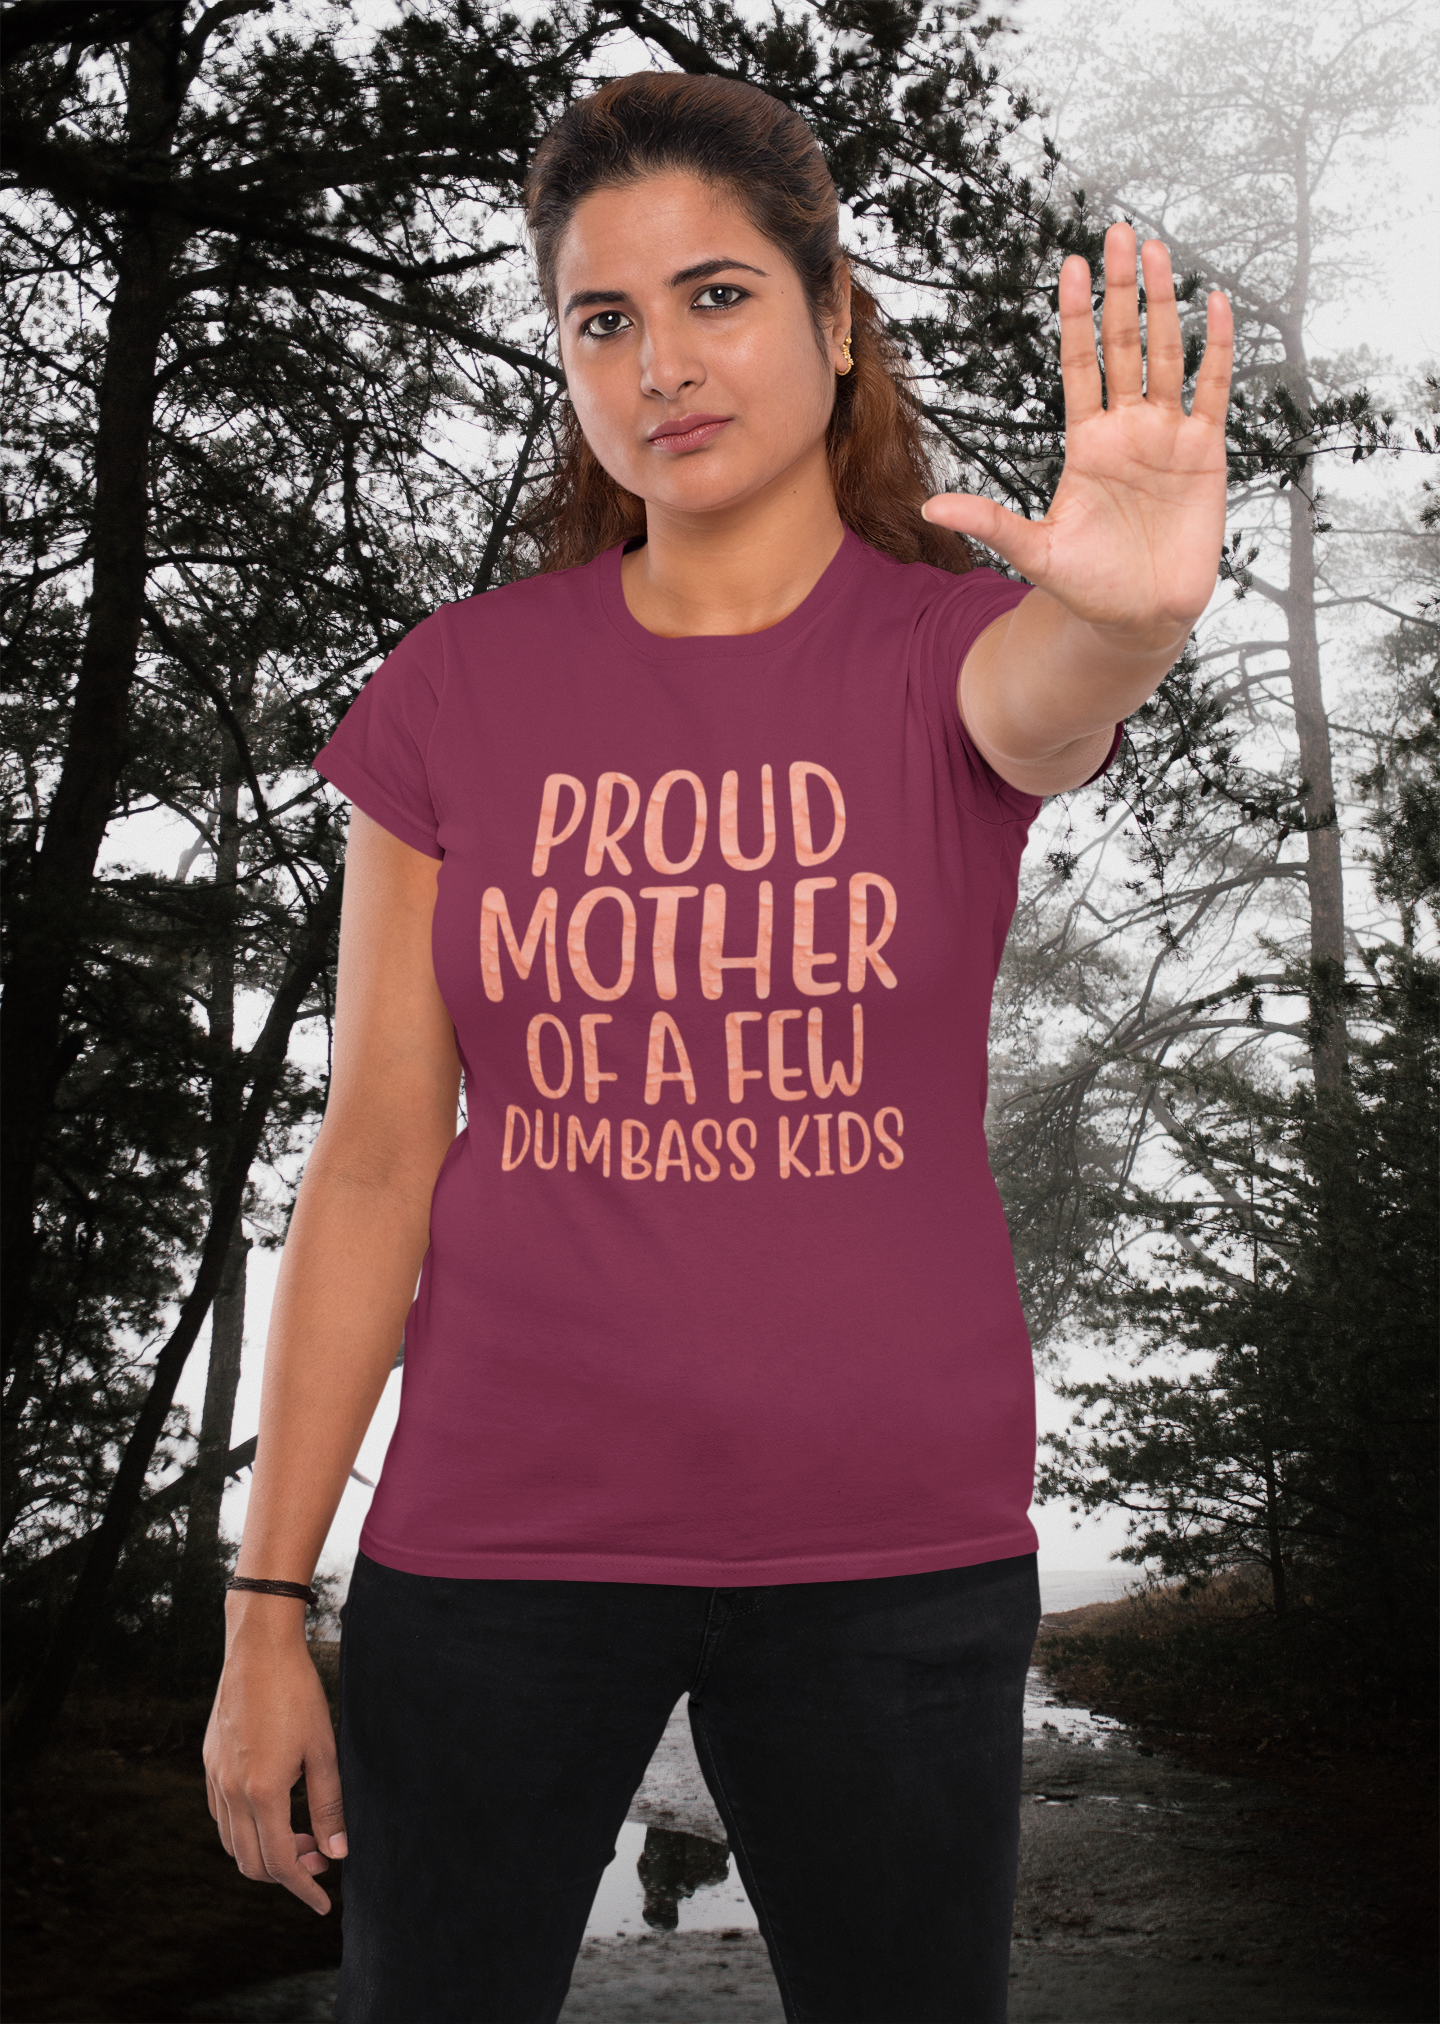 Proud Mother Of A Few Dumbass Kids - Women's T-shirt